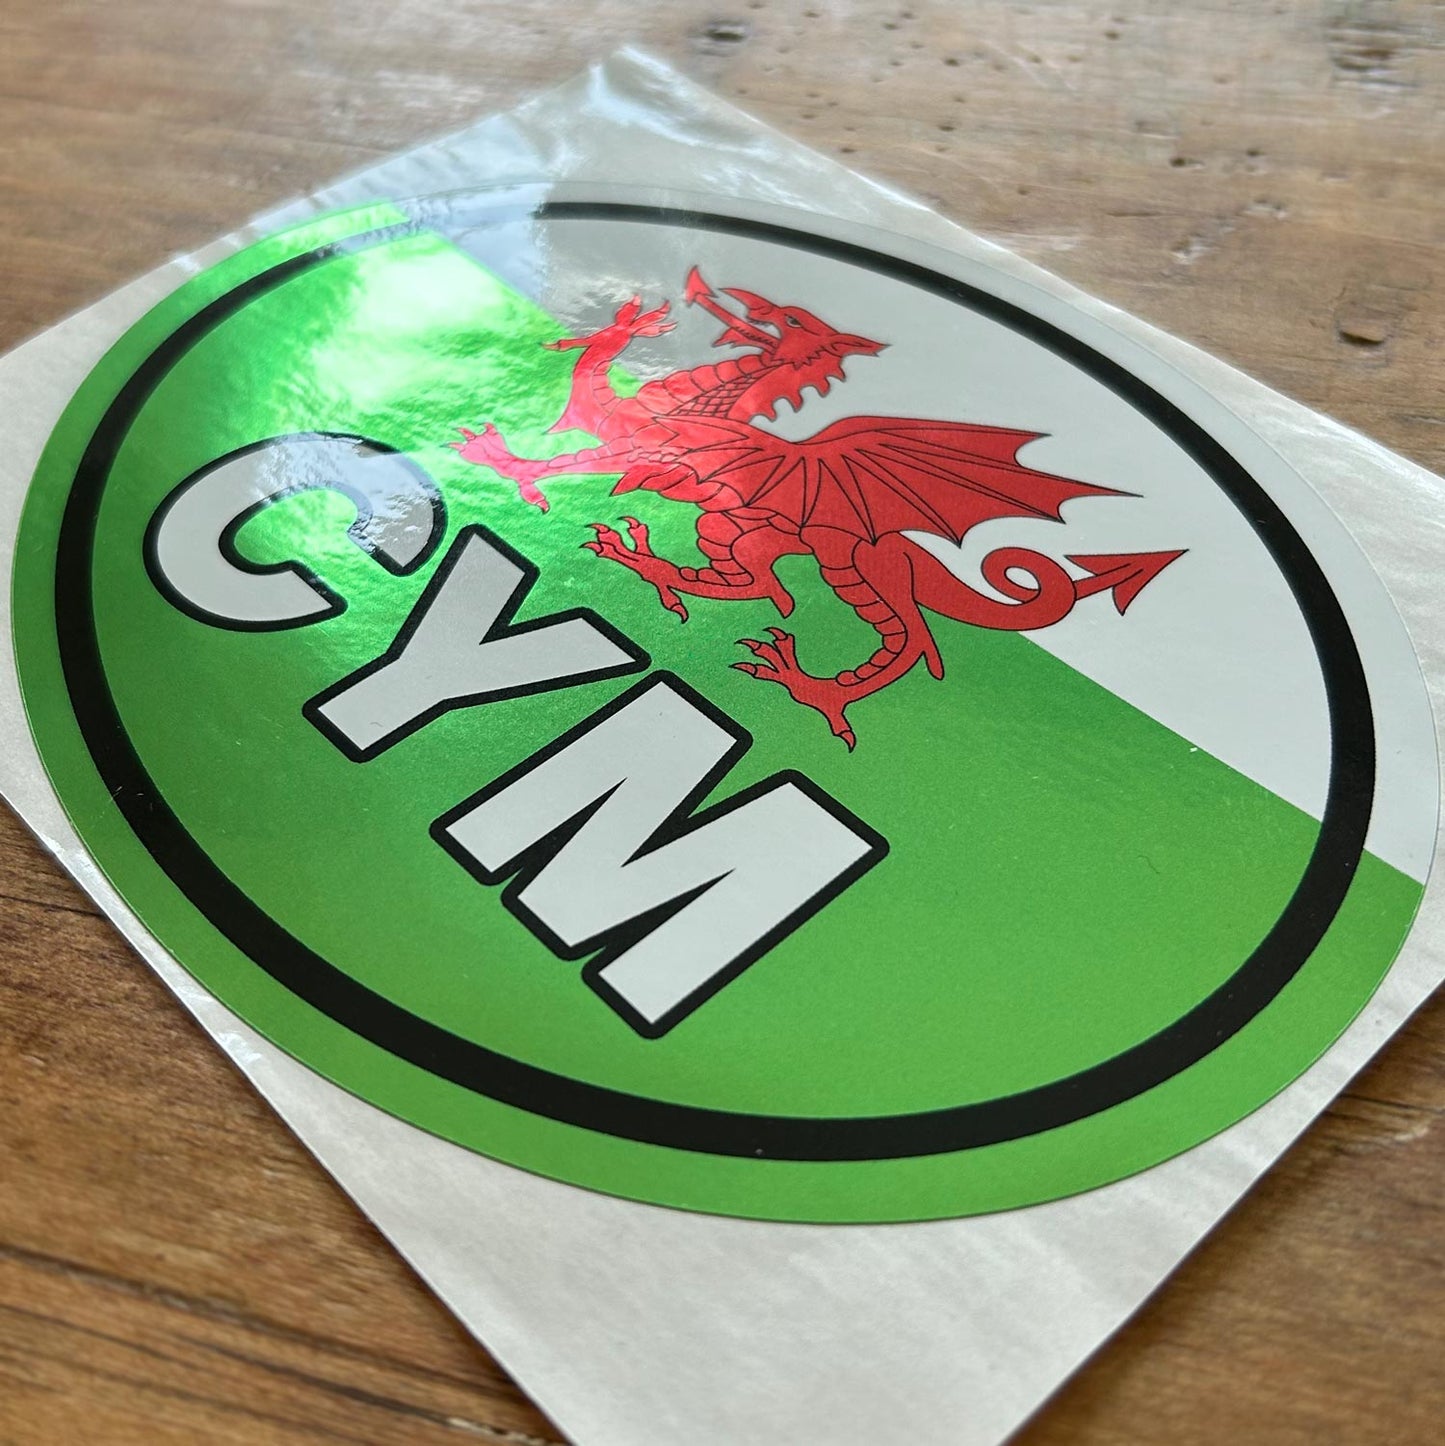 Bumper Sticker - CYM - Cymru / Wales - Metallic - Welsh Dragon Flag